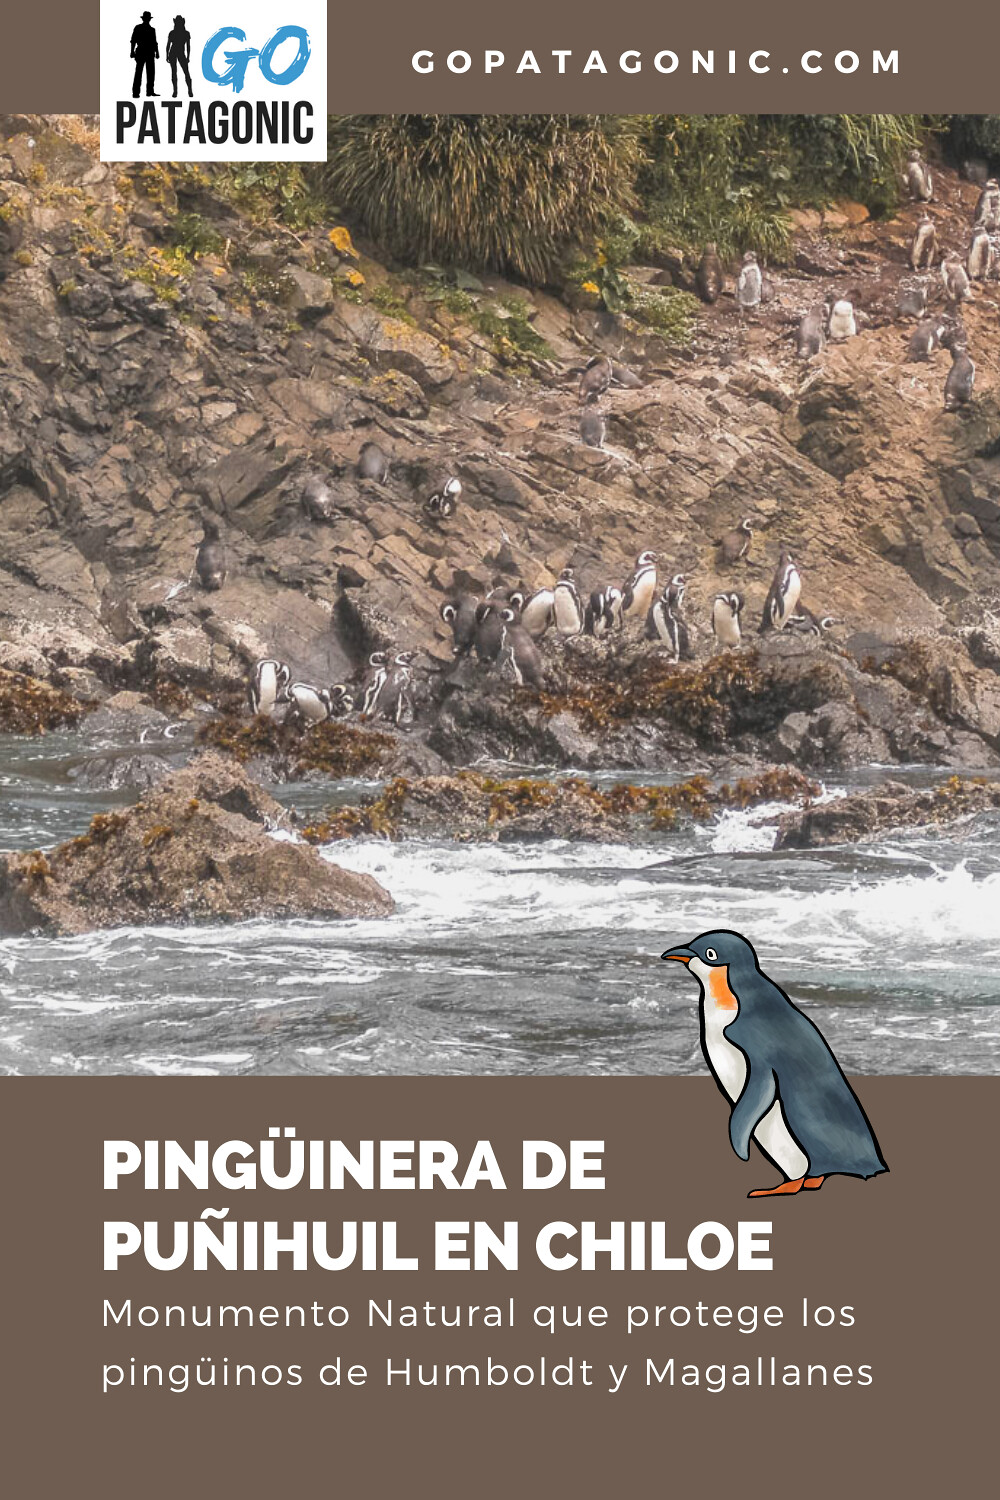 Visitar la pingüinera de Puñihuil